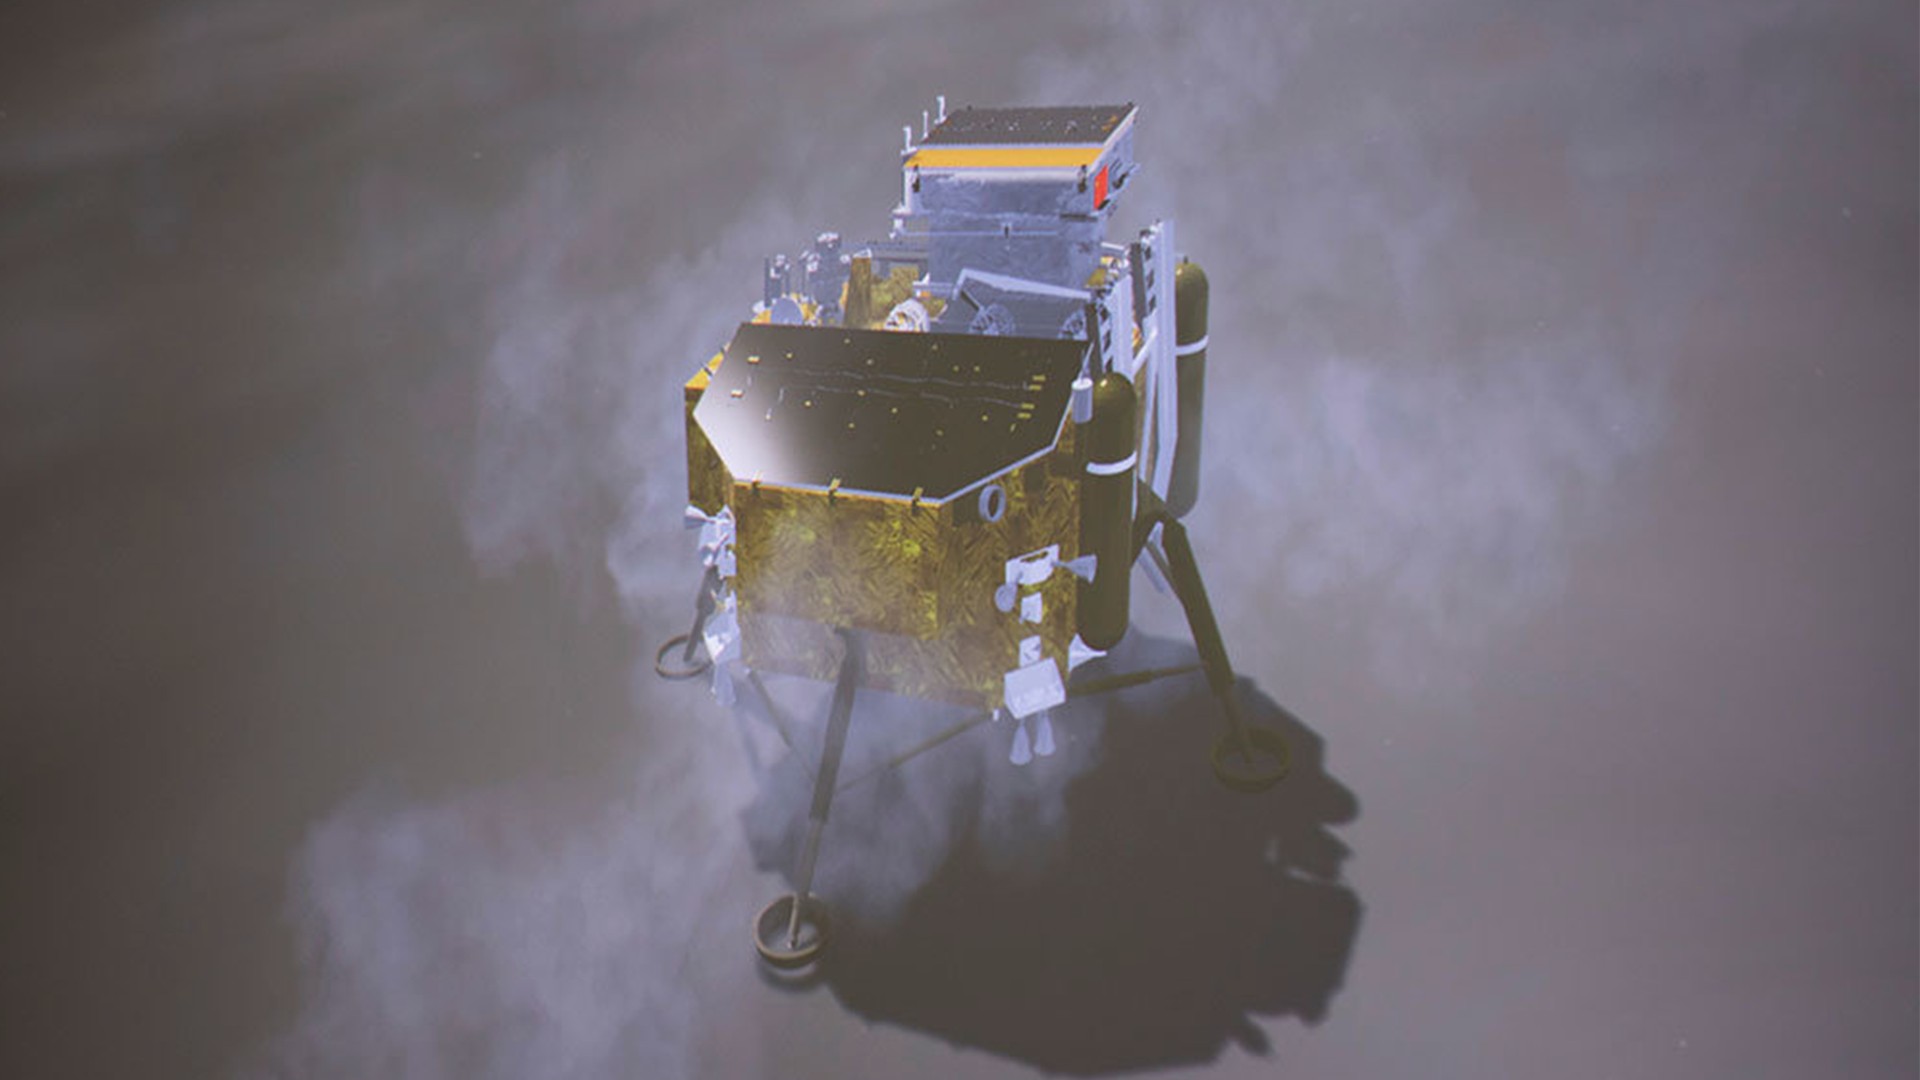 Китайский аппарат «Чанъэ-4» совершил посадку на обратной стороне Луны